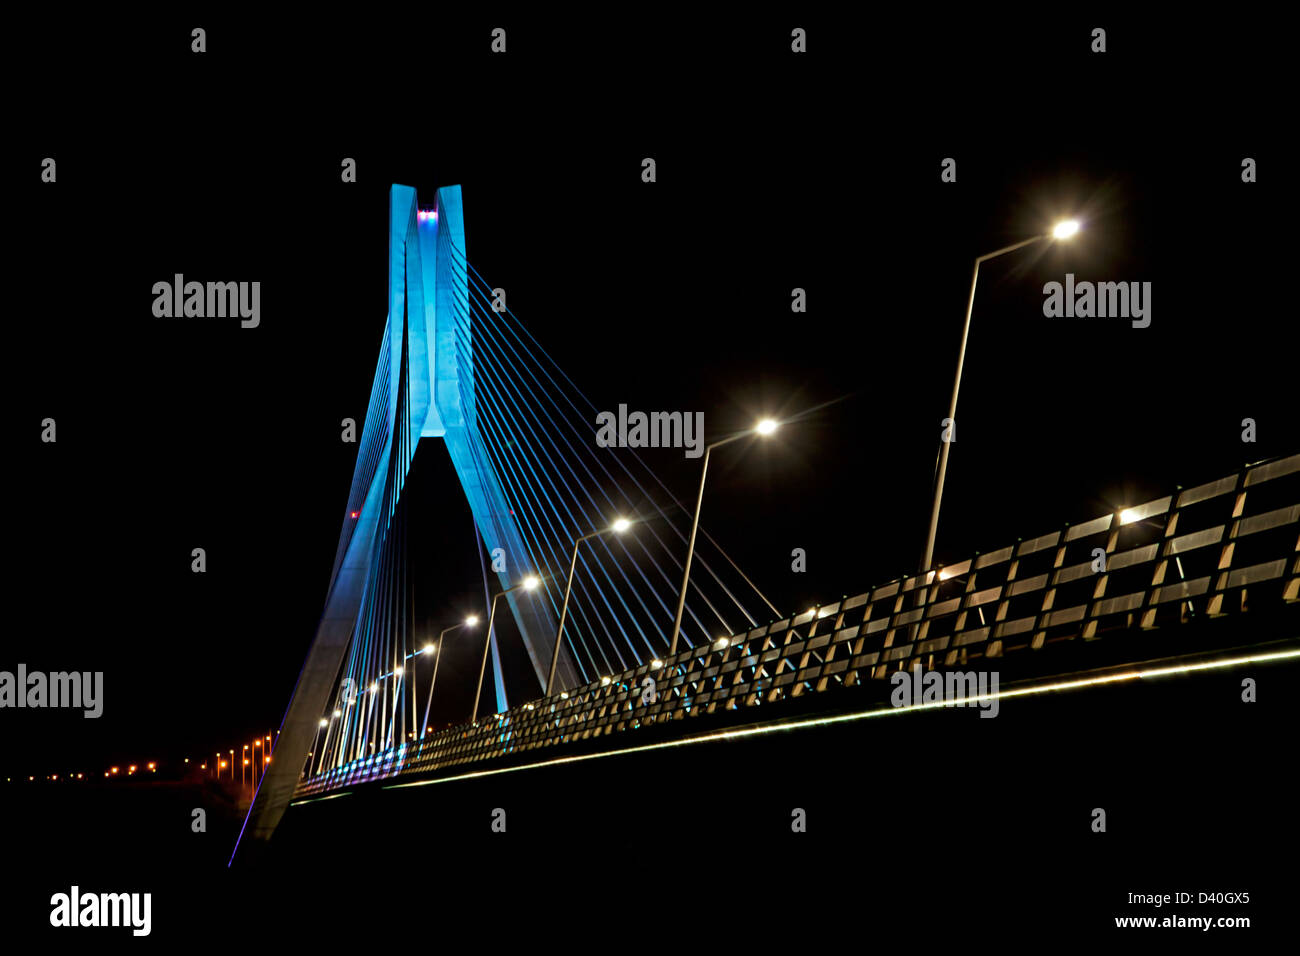 Le pont suspendu de la rivière Boyne Irlande Drogheda Banque D'Images